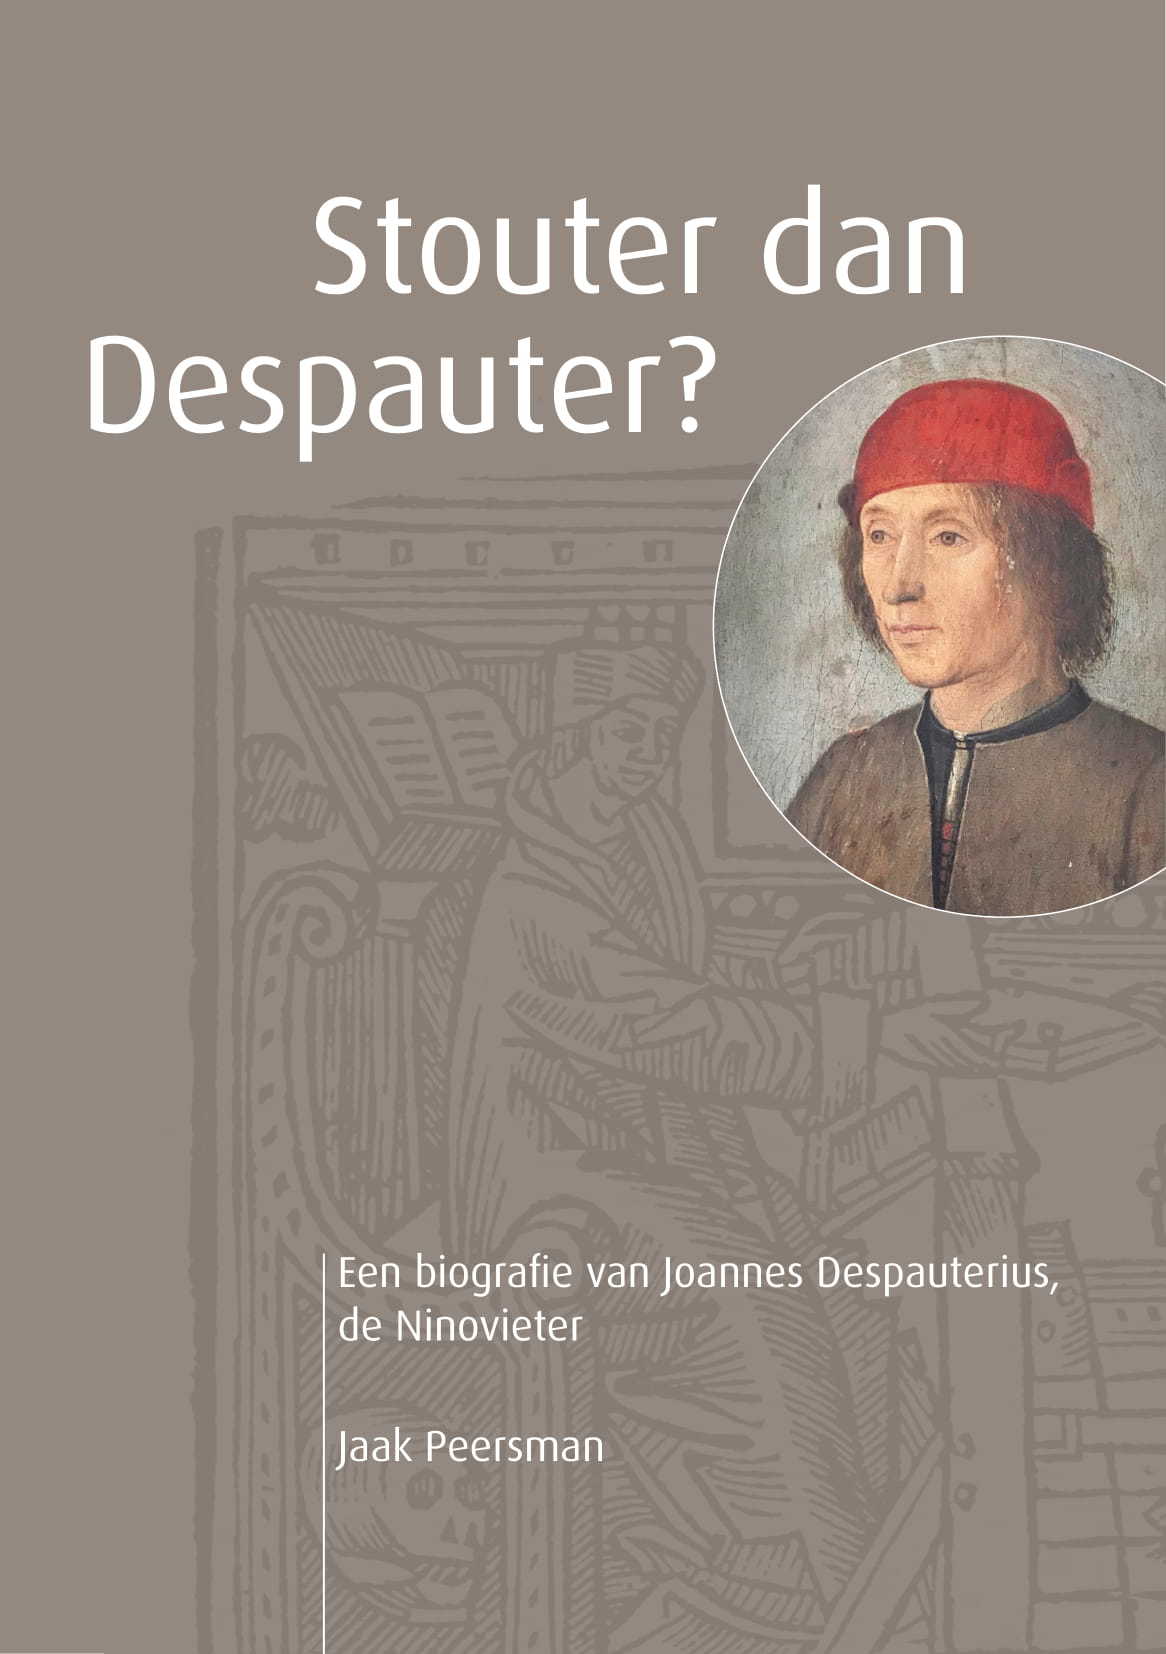 Depauterius